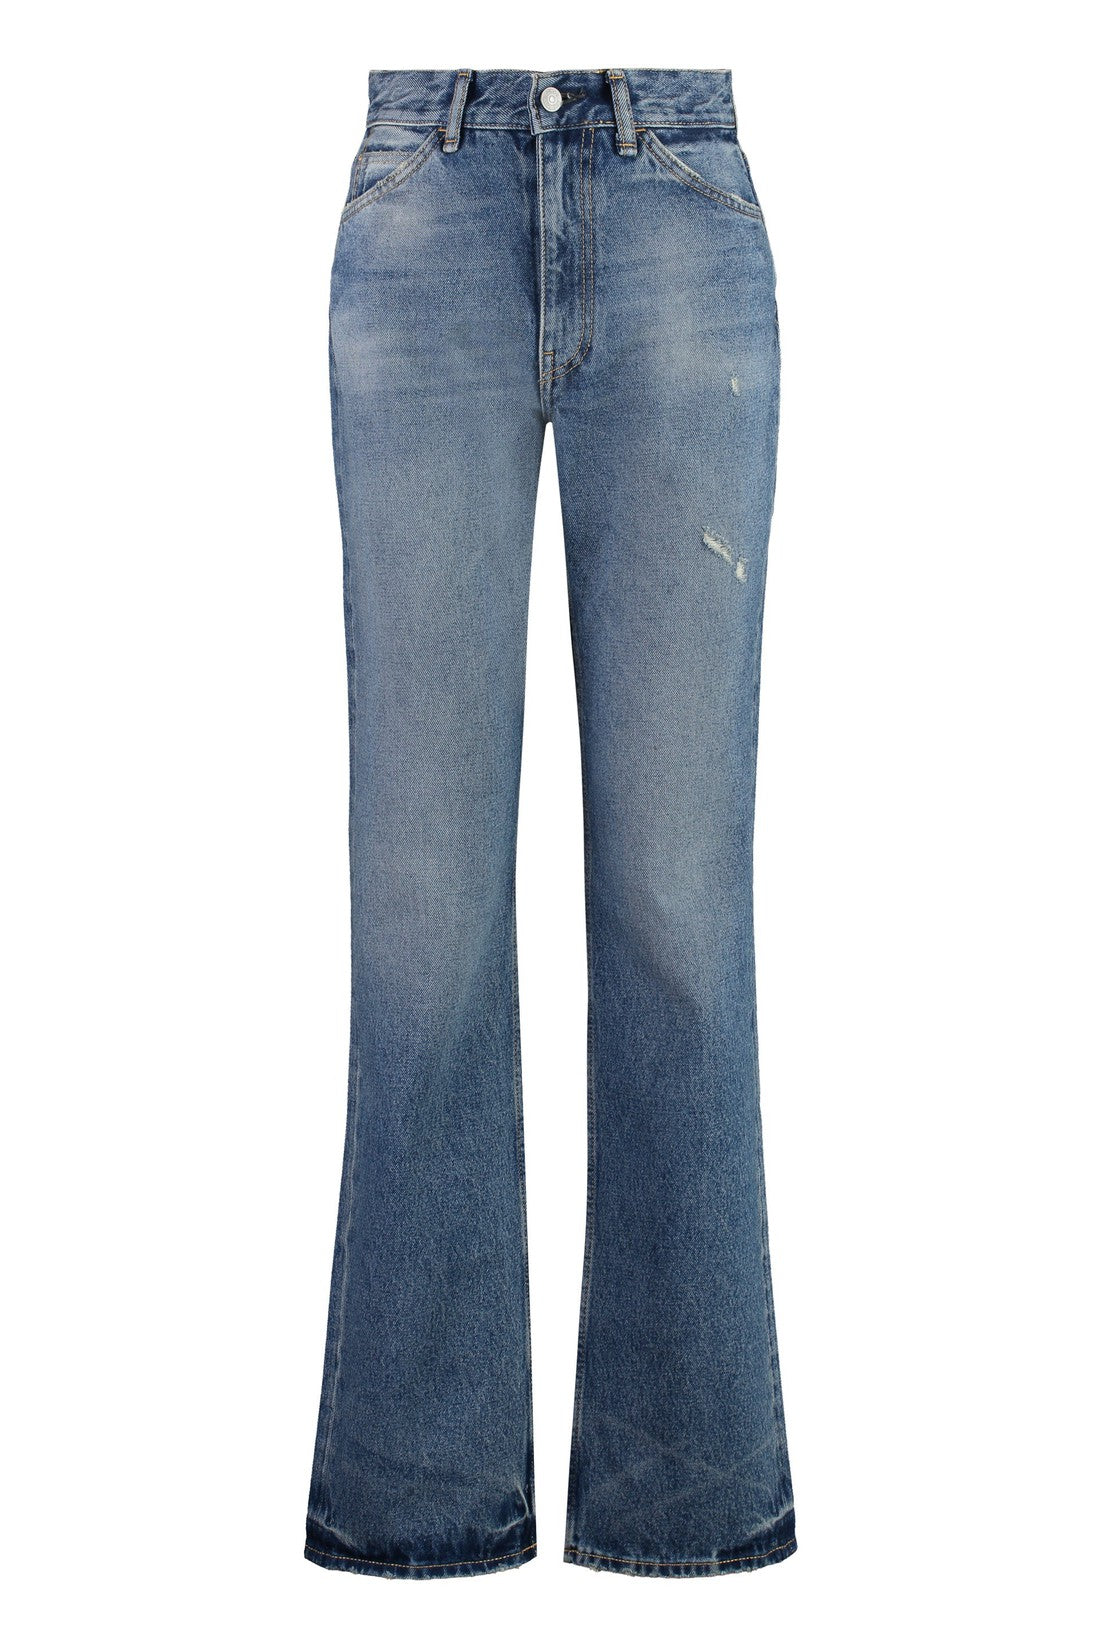 Acne Studios-OUTLET-SALE-1977 regular fit jeans-ARCHIVIST